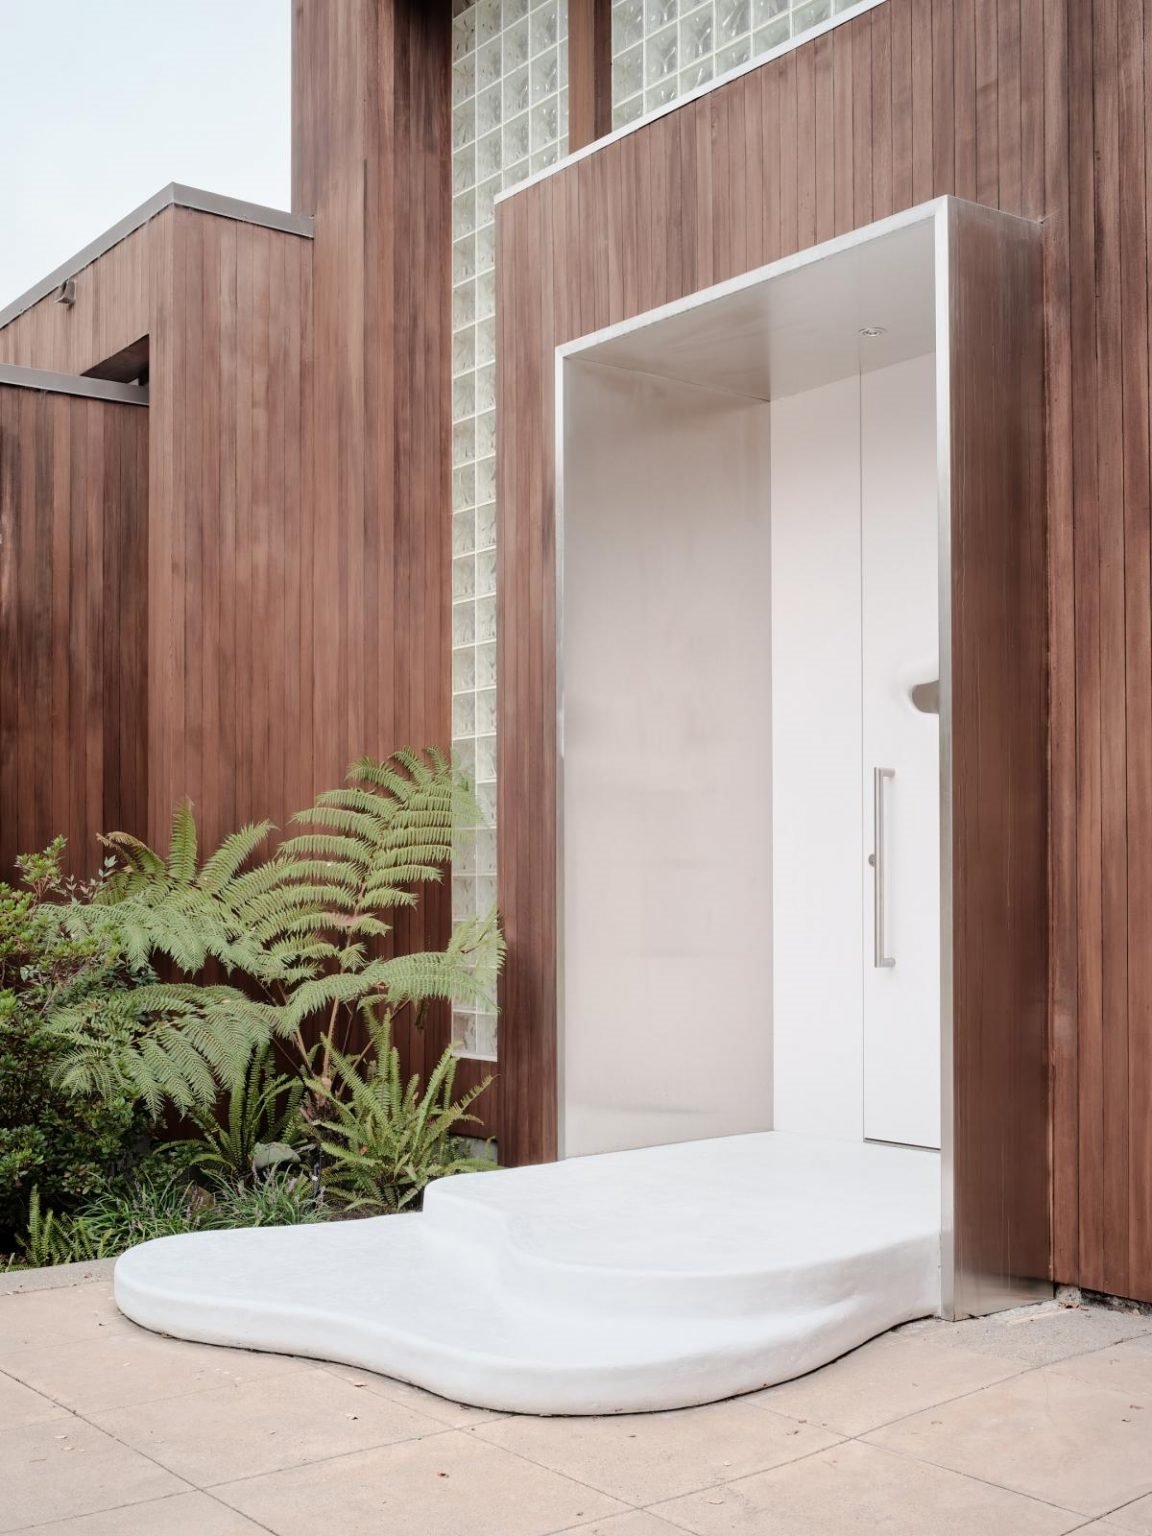 Casa en california con paredes organicas de color blanco puerta de entrada